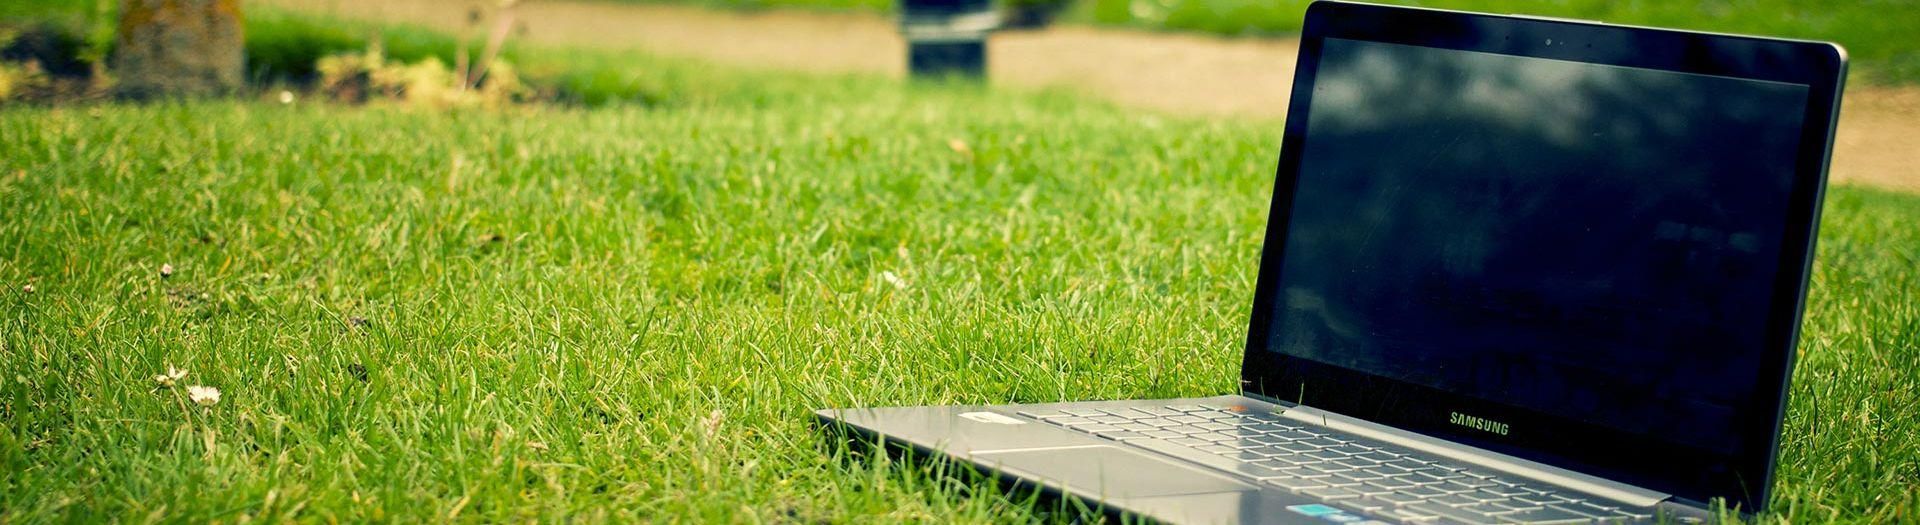 laptop-notebook-grass-meadow-9b558d75 Für wen?